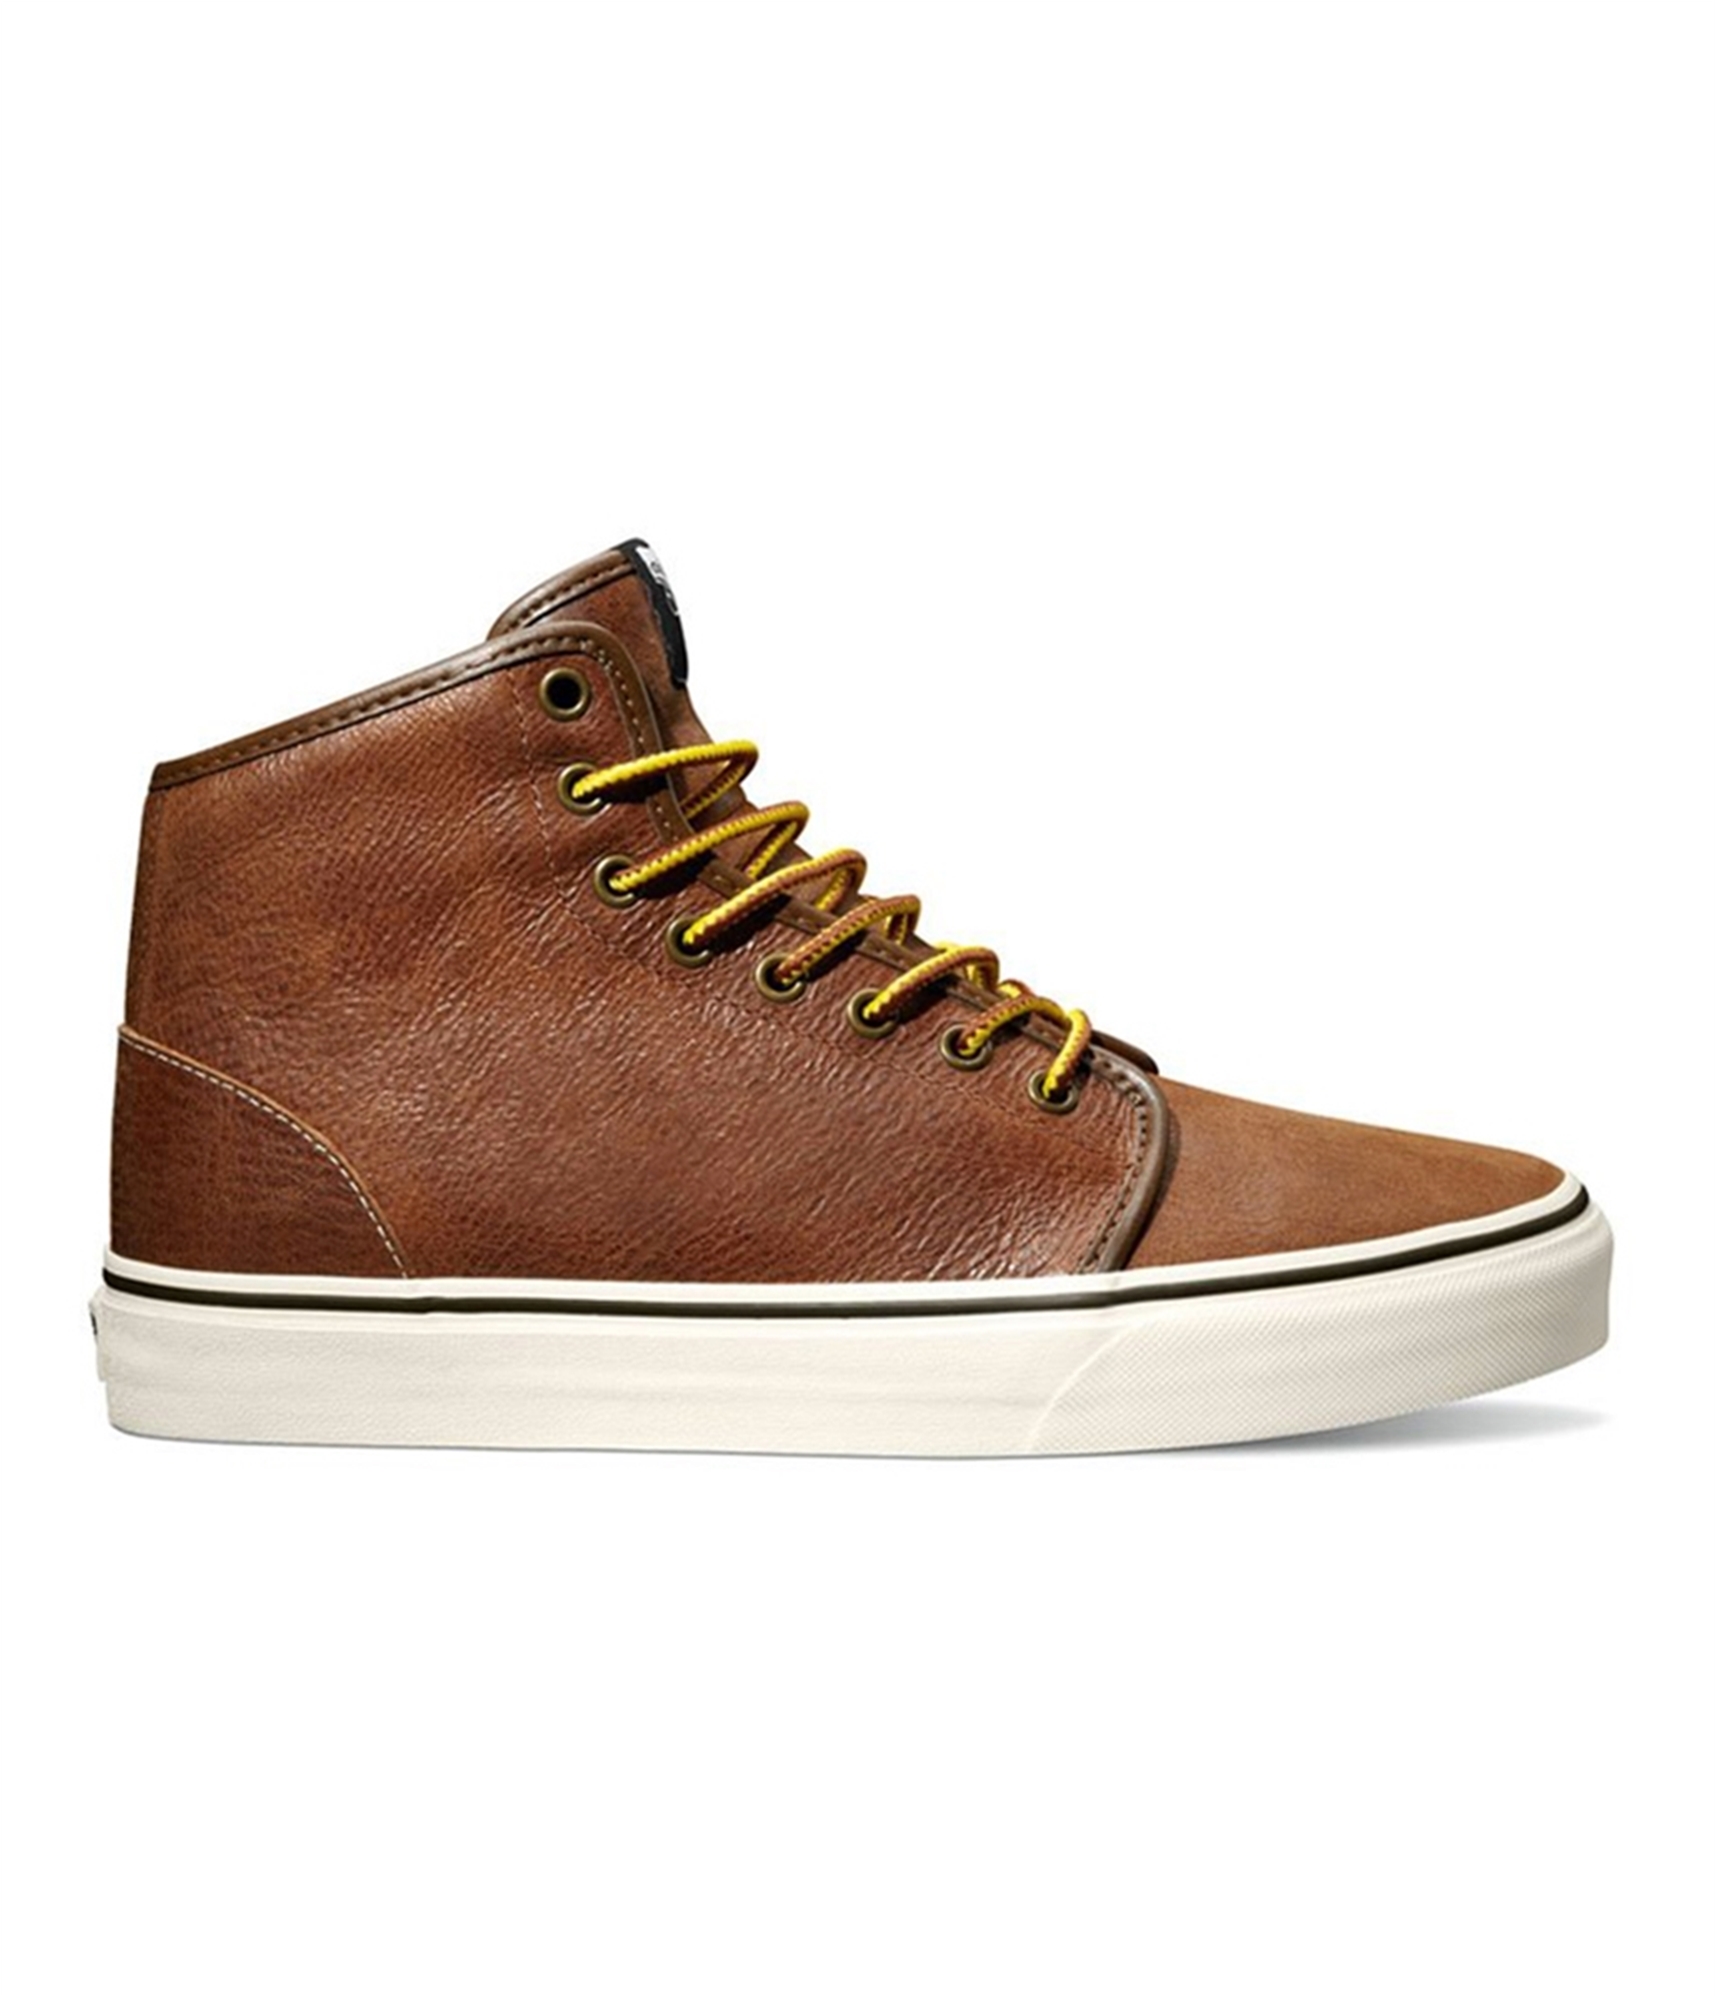 Vans Mens 106 Hi Leather Skate Sneakers | Mens Footwear | Free Shipping ...